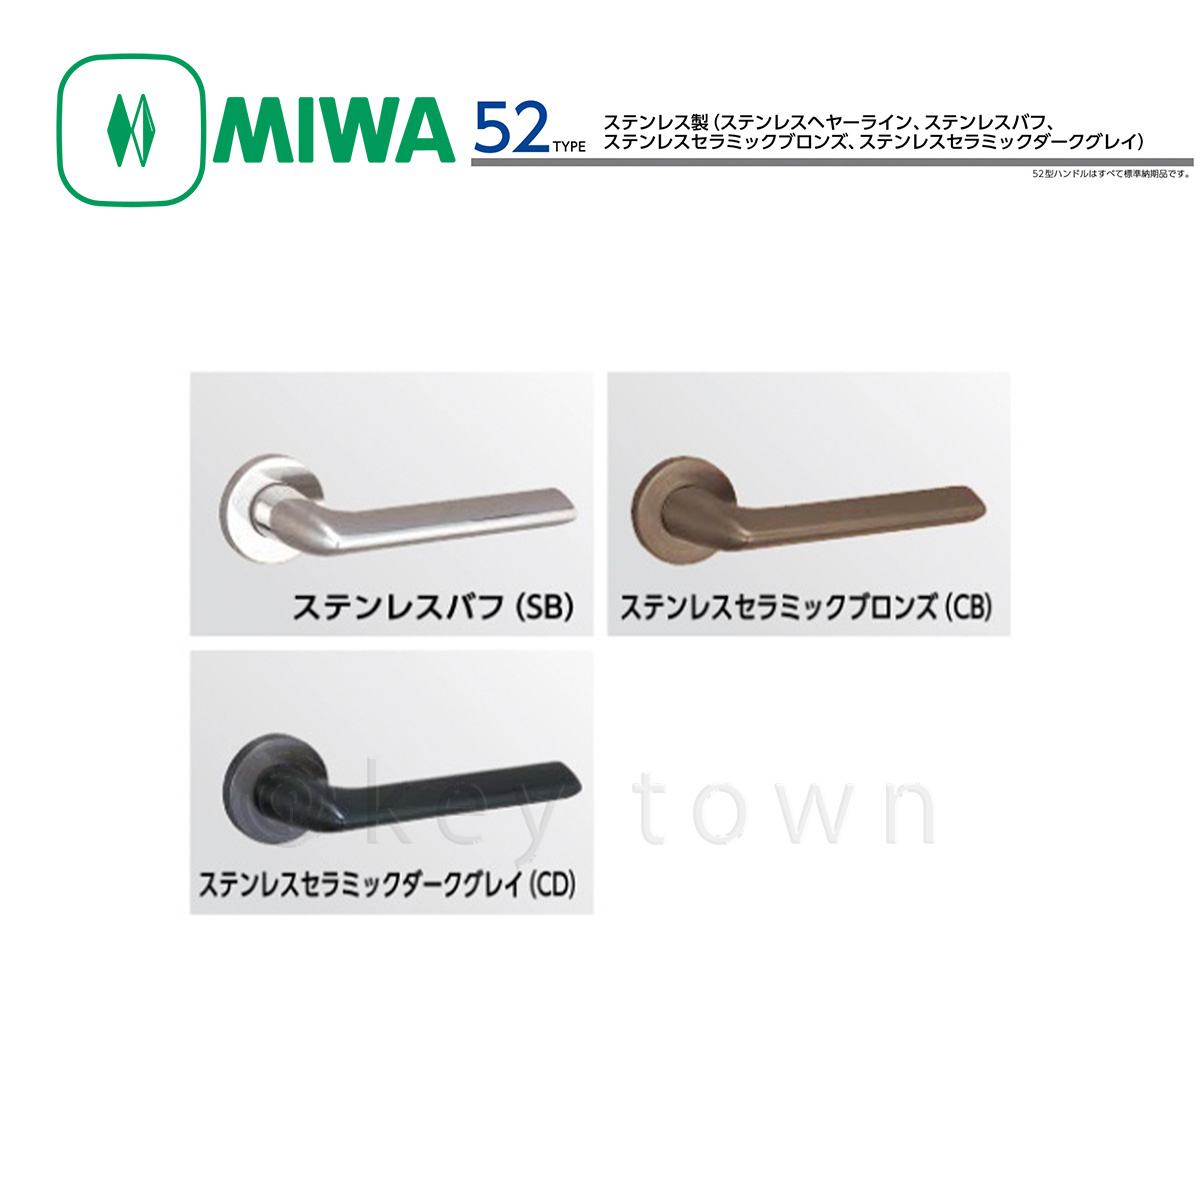 MIWA 【美和ロック】 ハンドル [MIWA-52] 交換用 ステンレス製[MIWA 52 